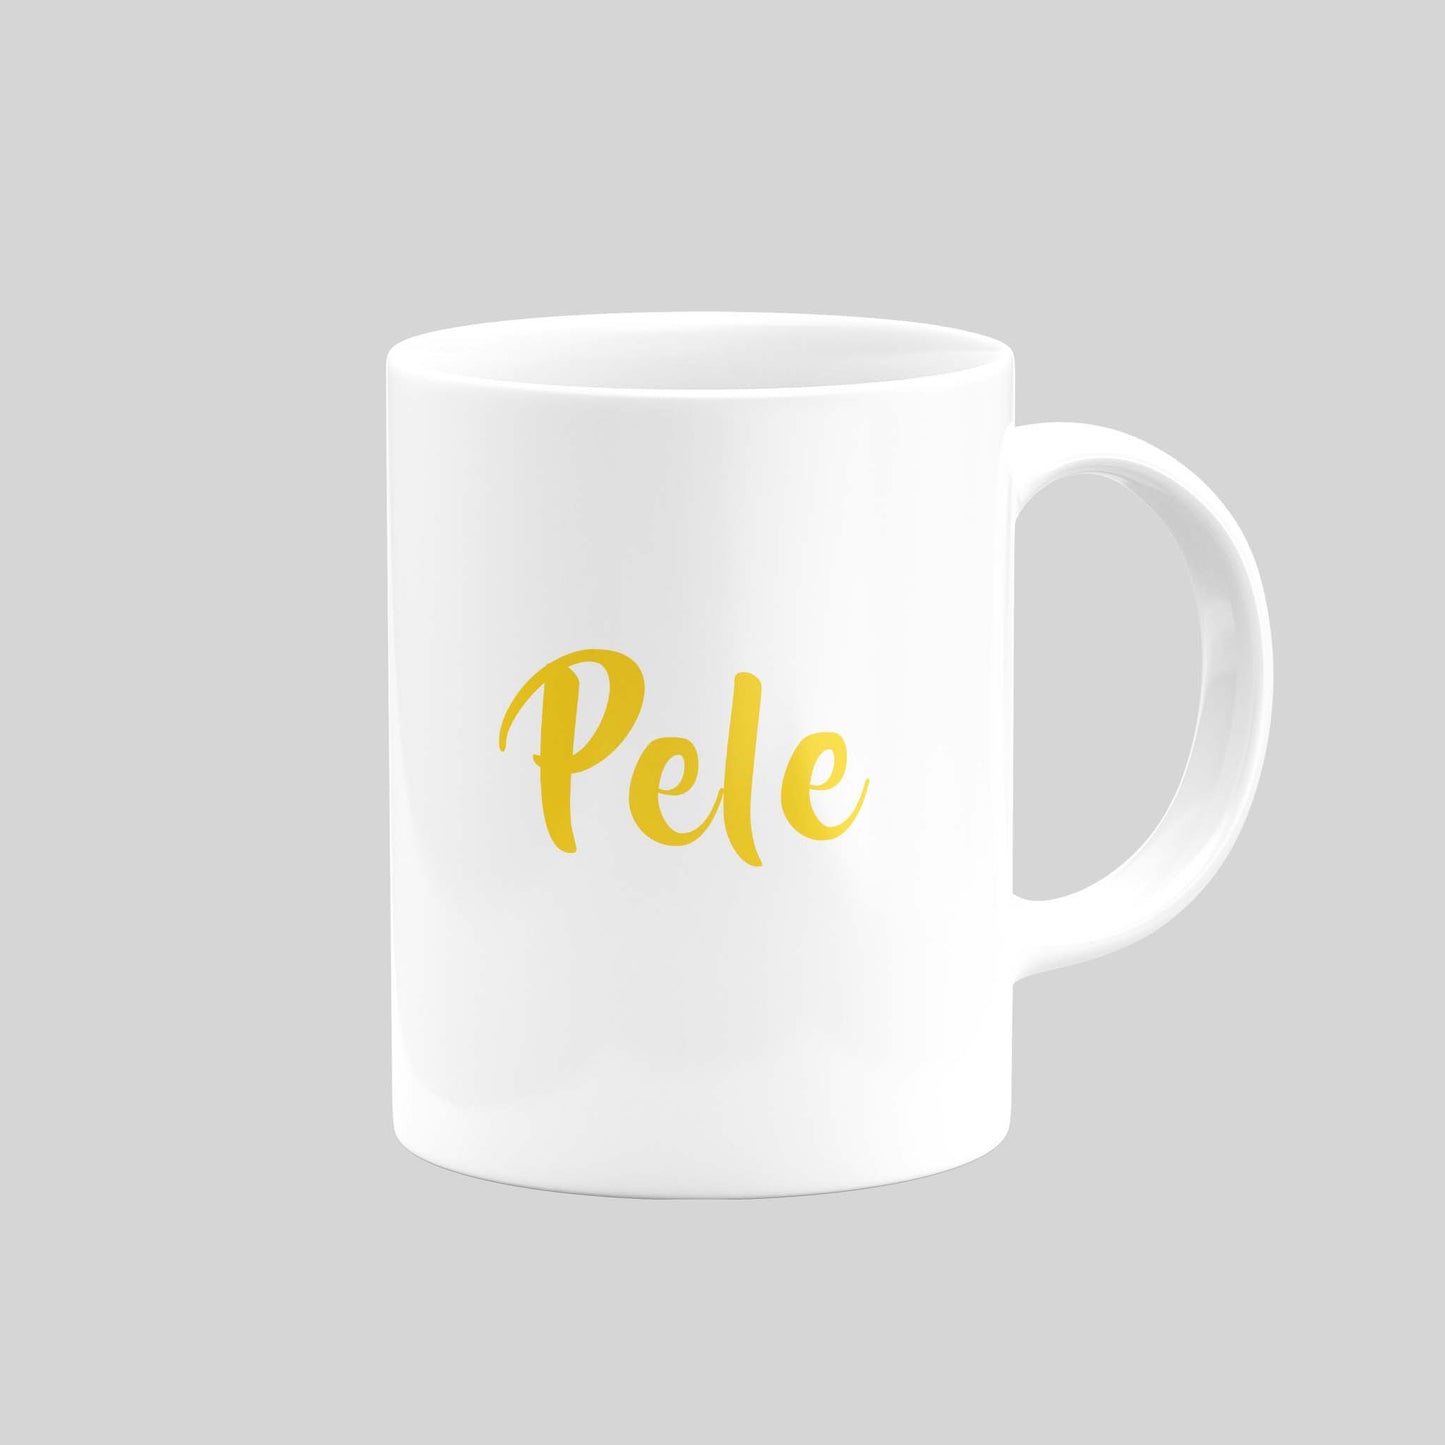 Pele Mug